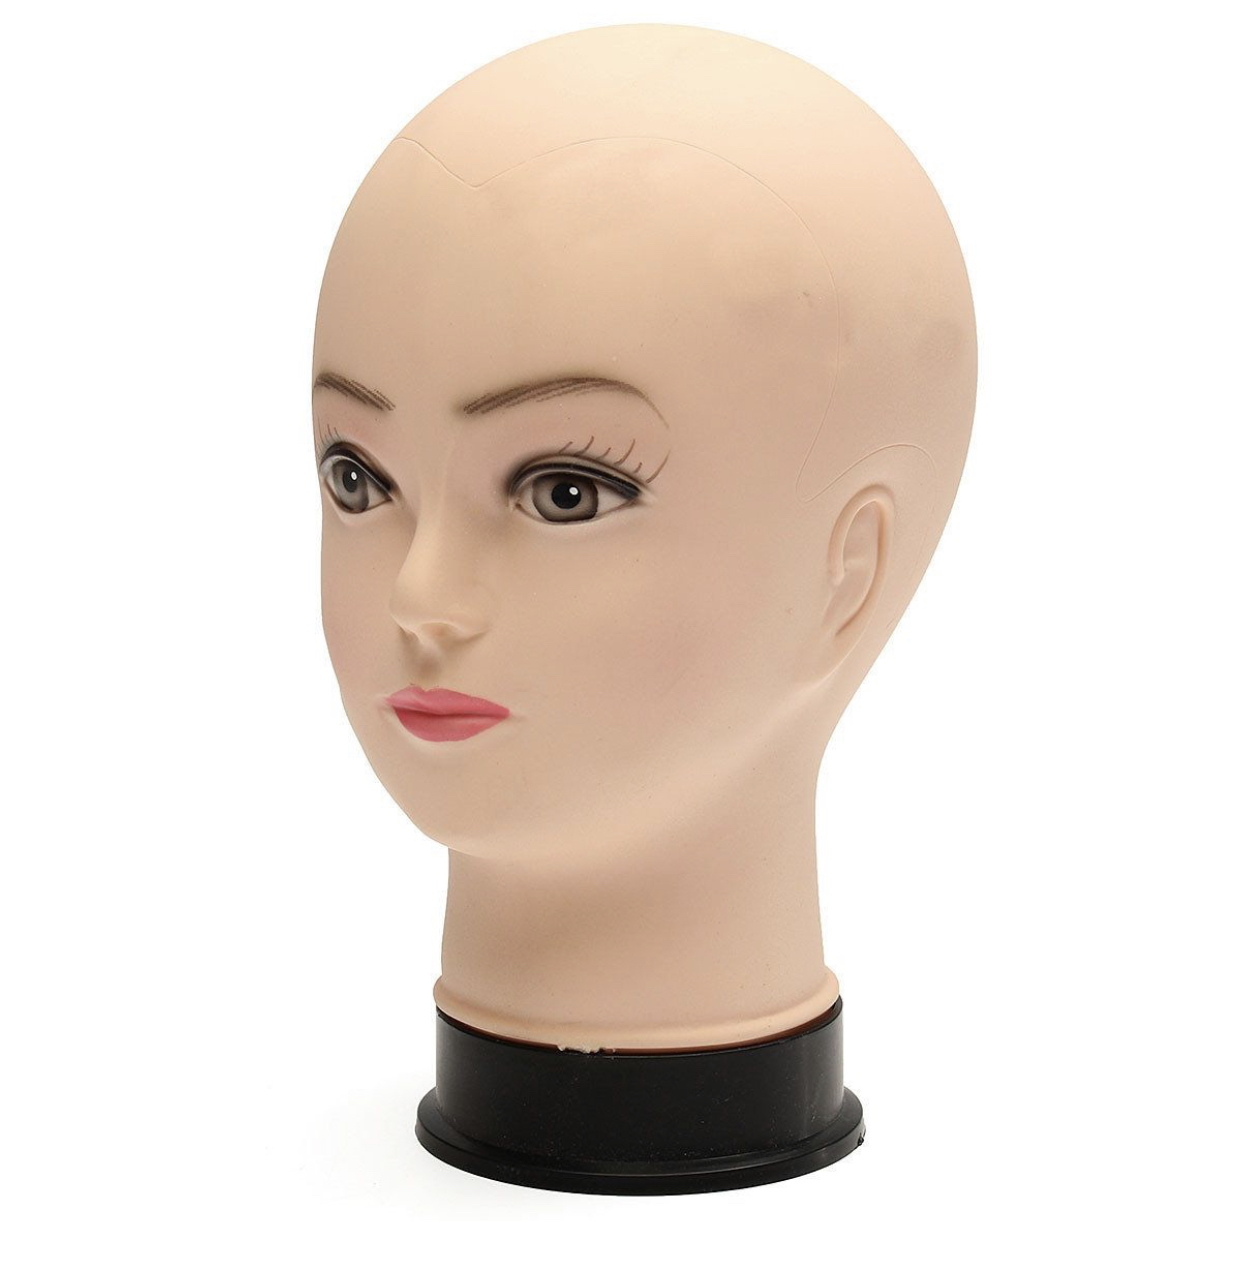 Bald pierce-able mannequin head